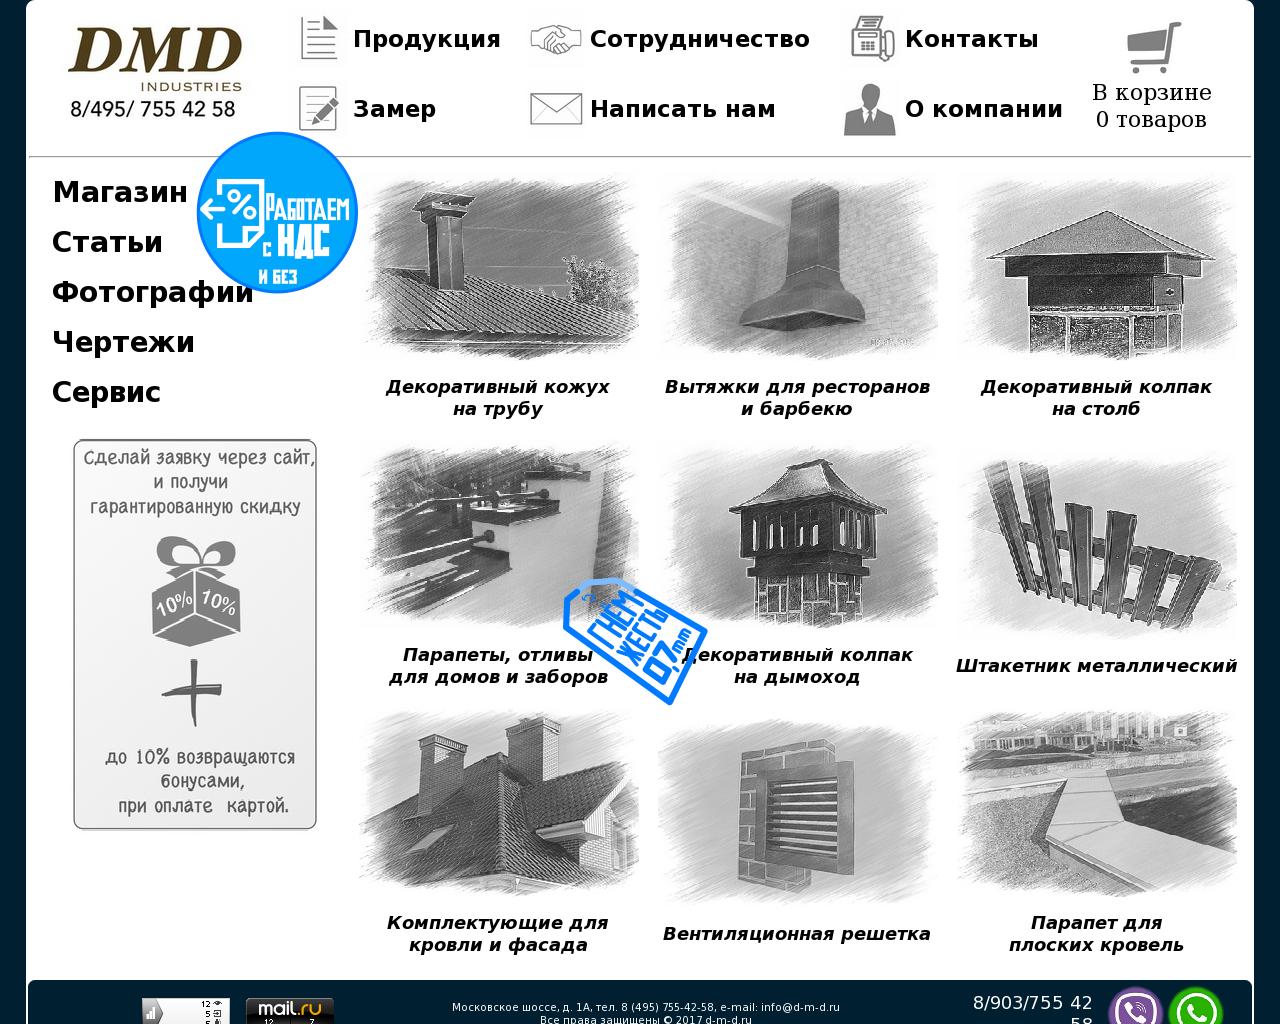 Изображение сайта d-m-d.ru в разрешении 1280x1024